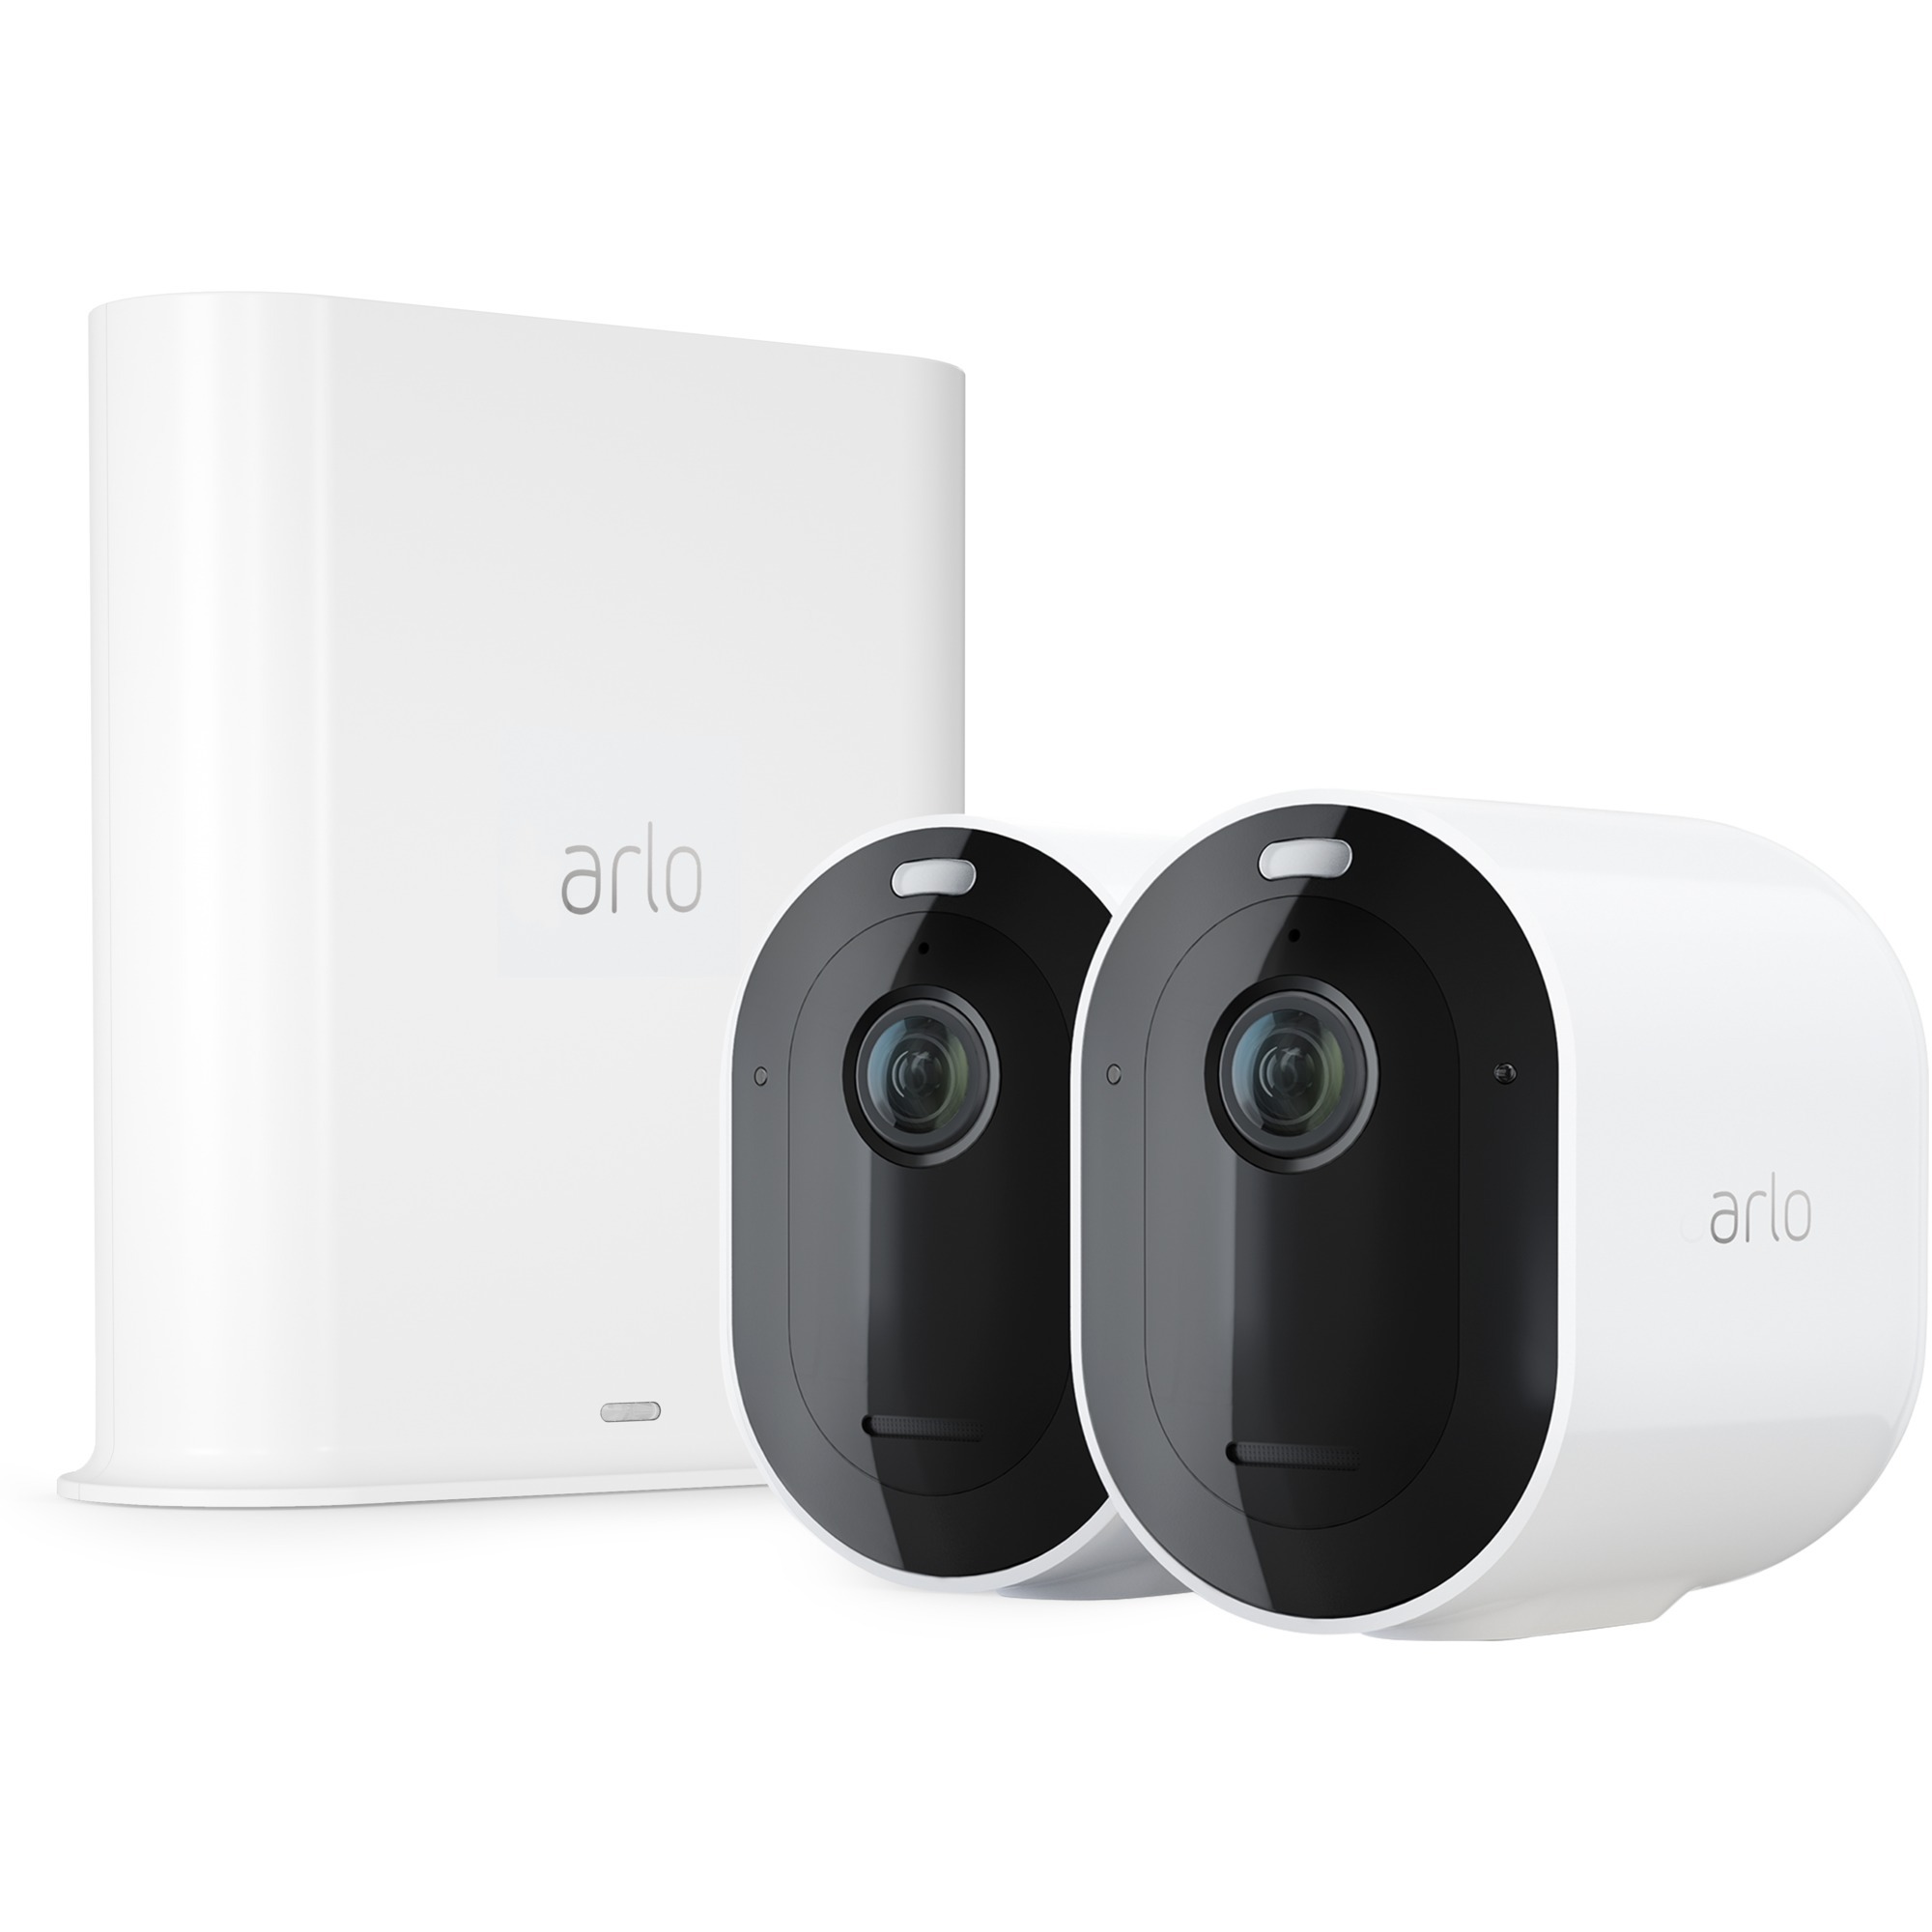 Image of Alternate - Pro 3 2K QHD Sicherheitssystem mit 2 Kameras + SmartHub, Überwachungskamera online einkaufen bei Alternate